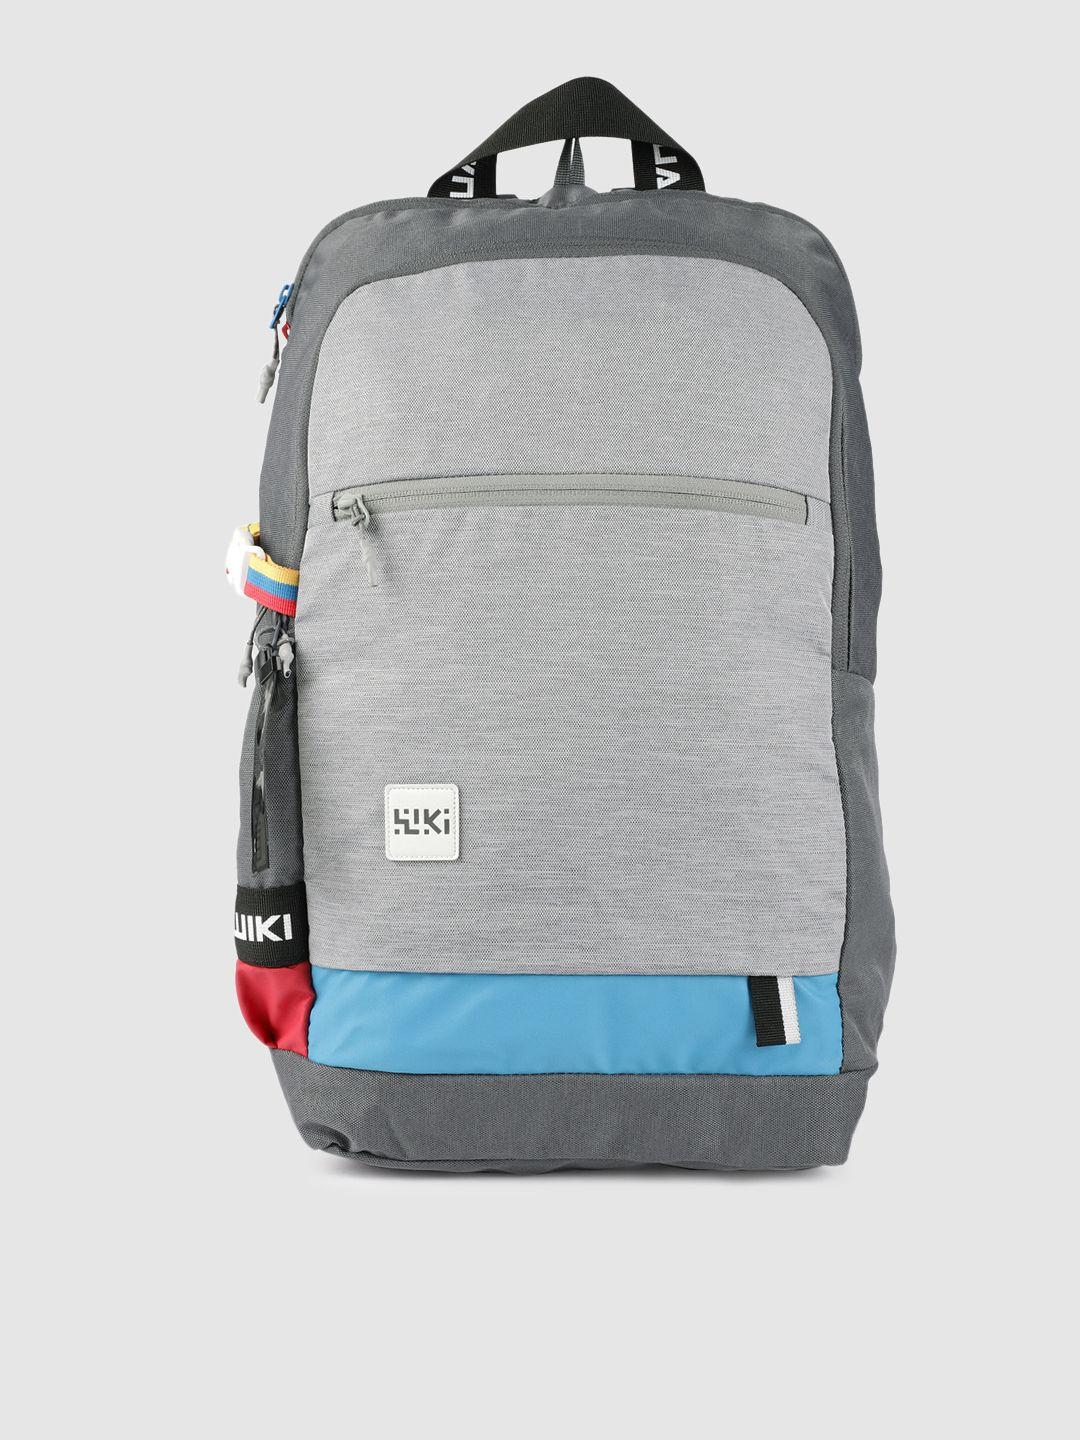 wildcraft unisex grey solid backpack